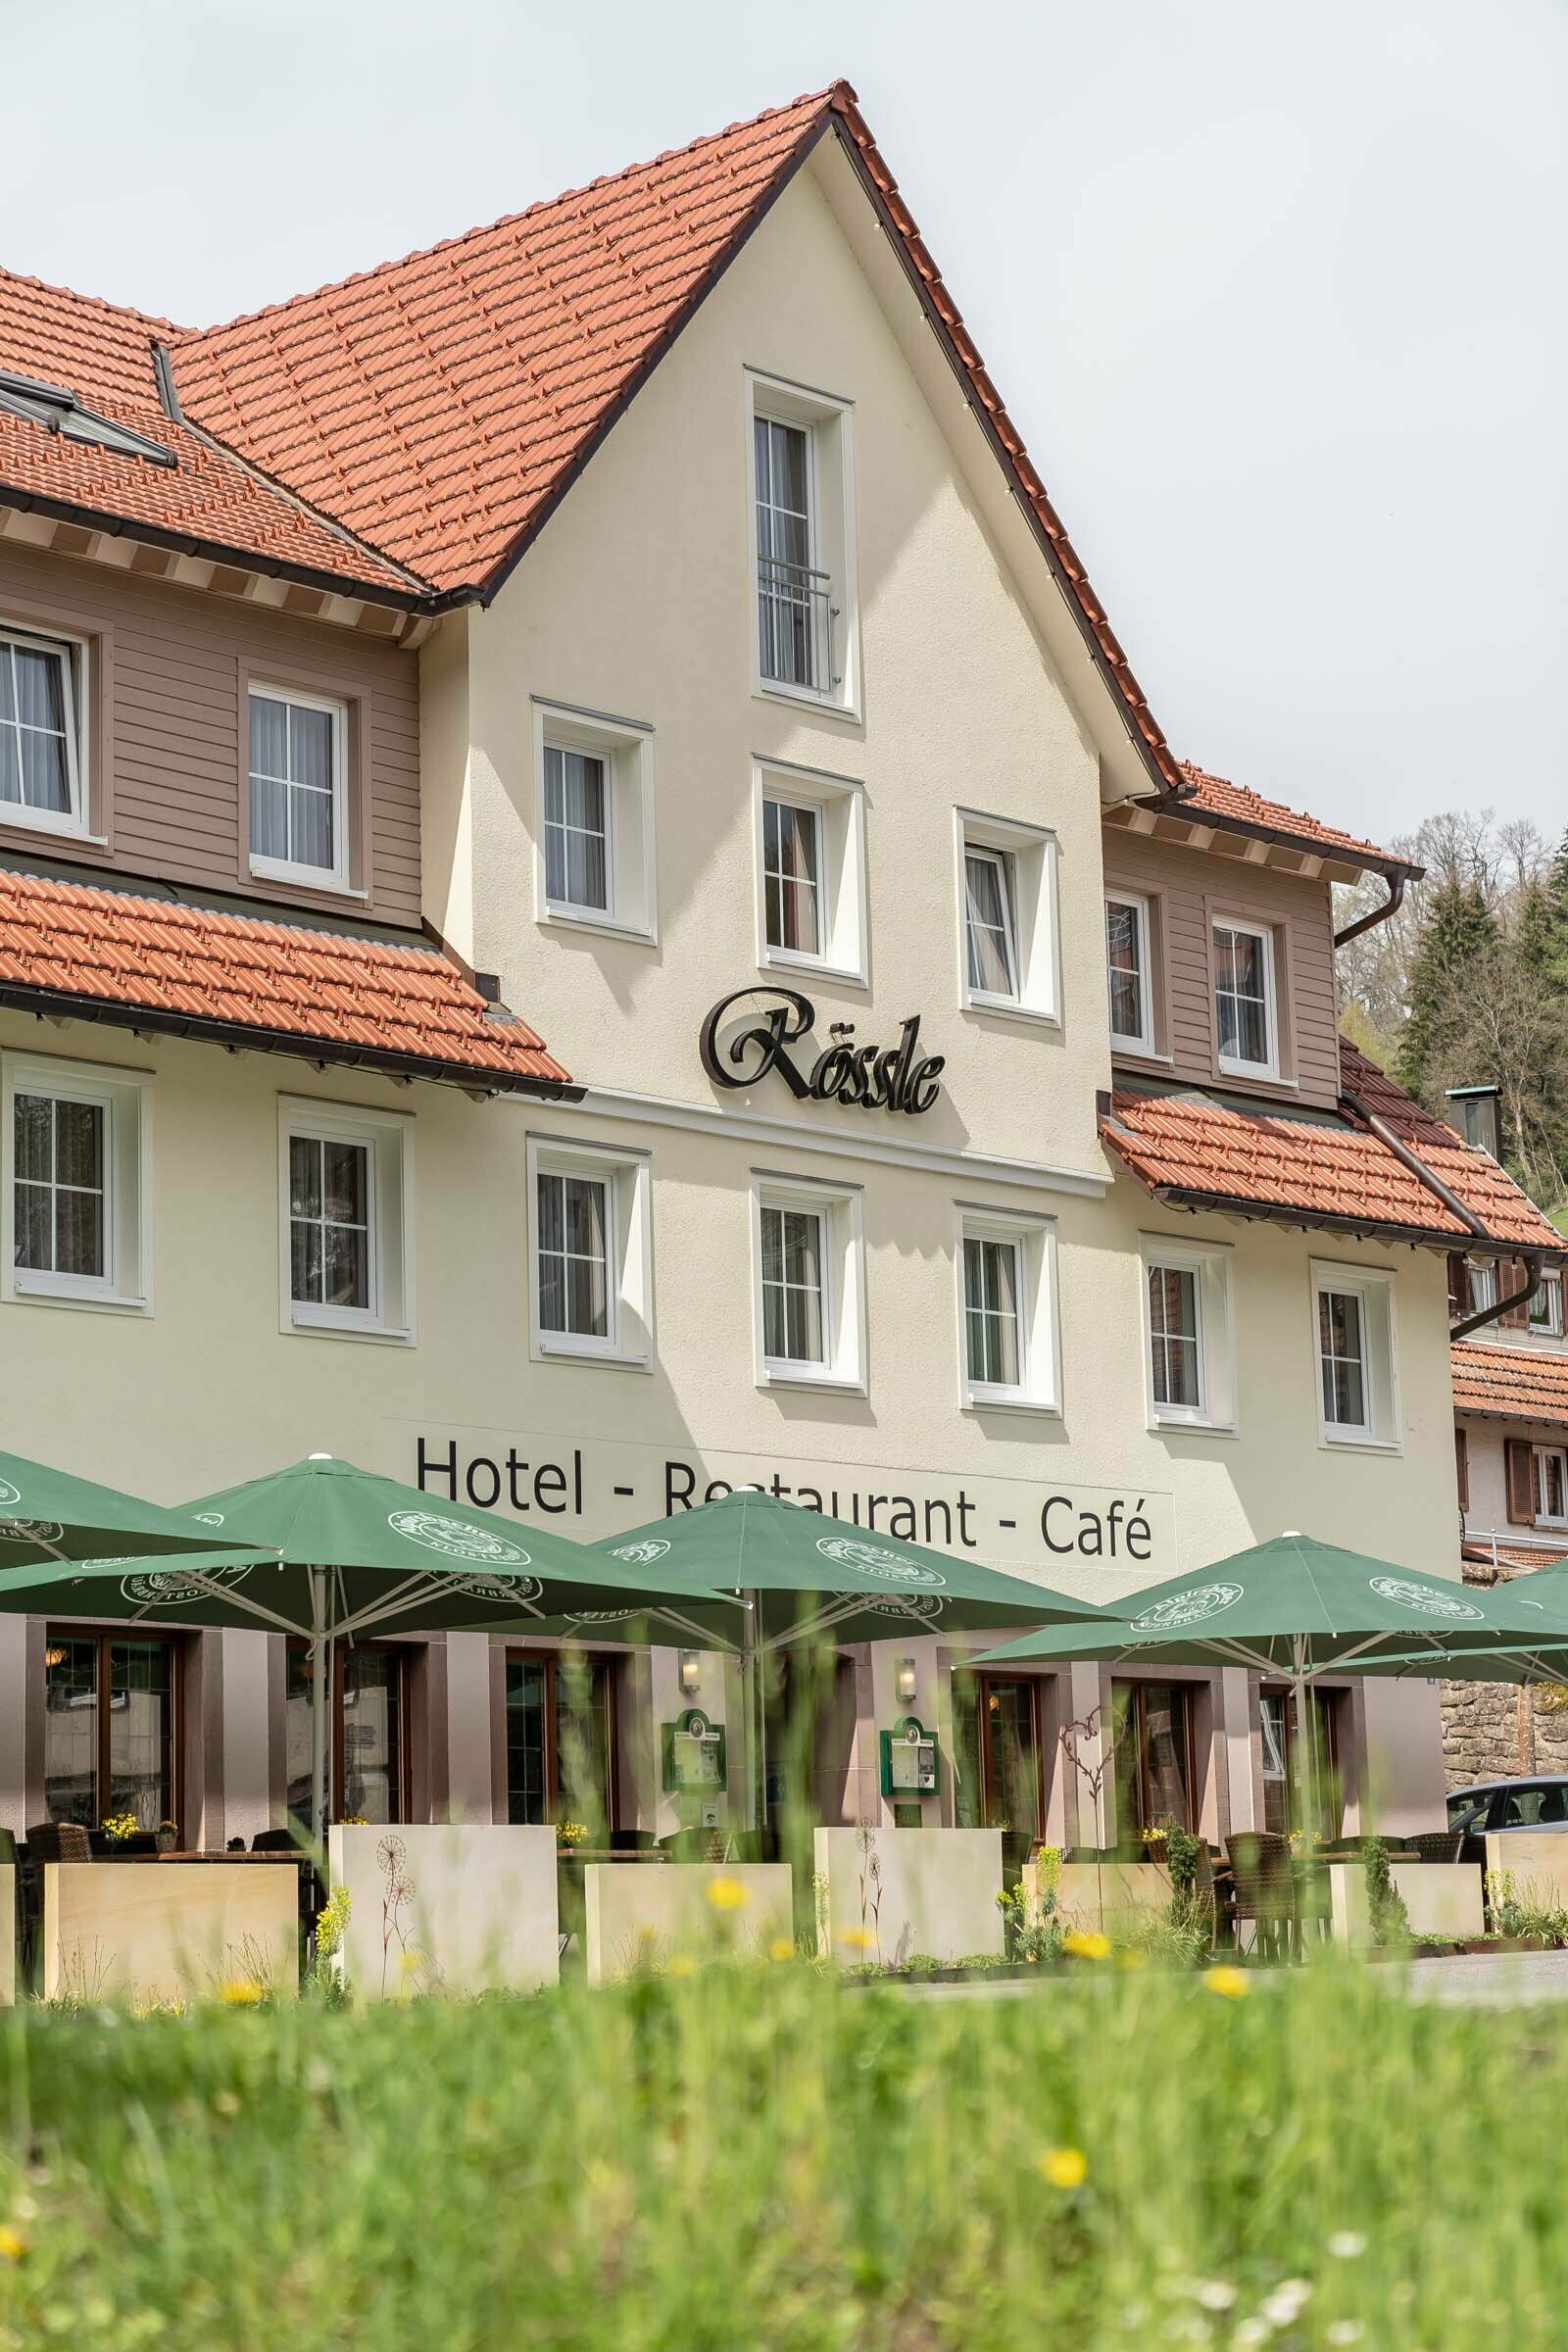 2 Tage Natur pur im schönen Schwarzwald – Hotel Rössle Berneck  in Altensteig, Baden-Württemberg inkl. Halbpension